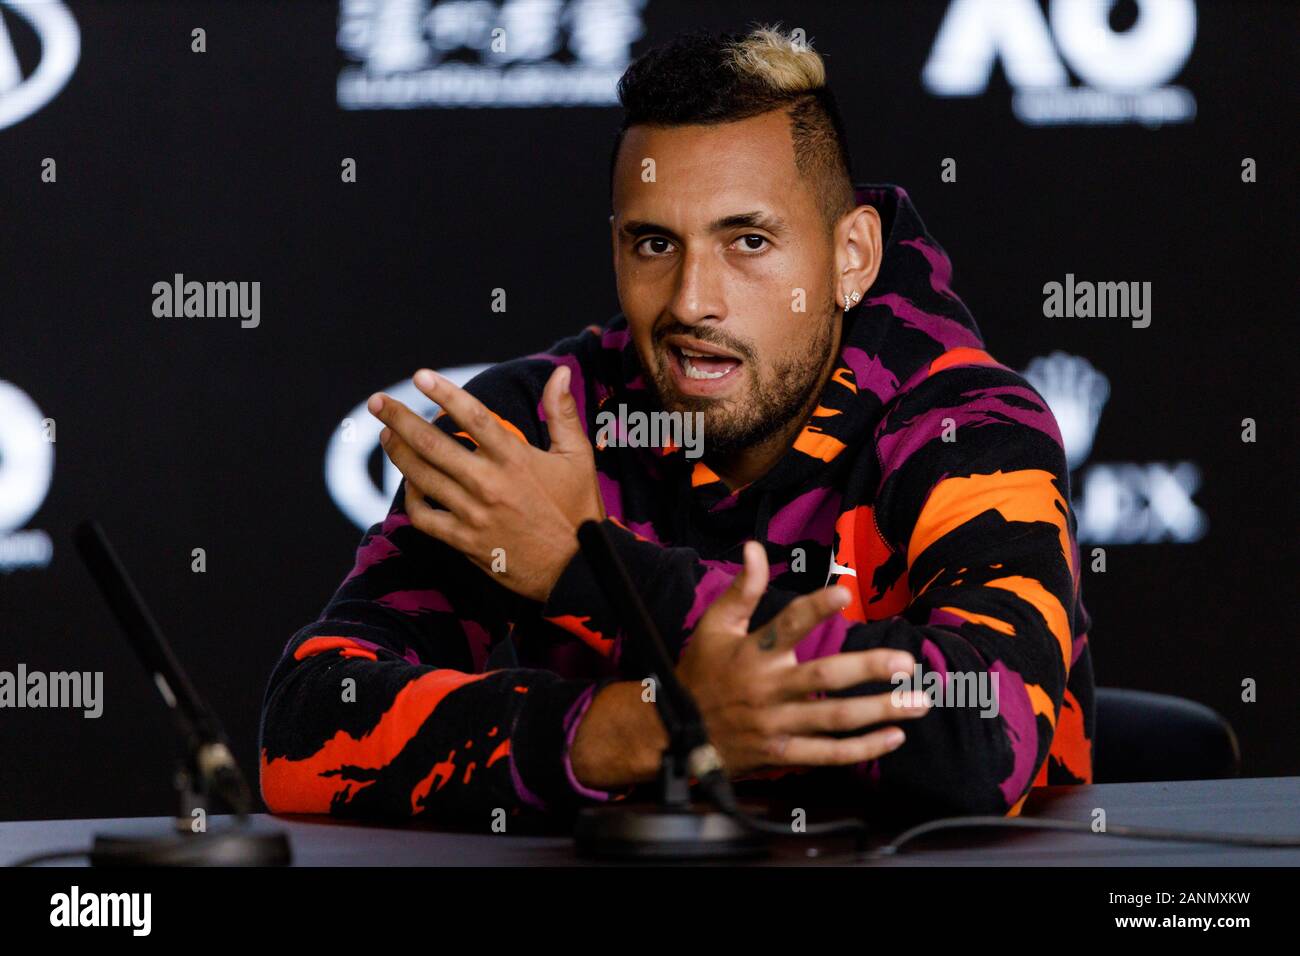 Nick KYRGIOS (aus) während einer Pressekonferenz bei den Australian Open 2020 Stockfoto